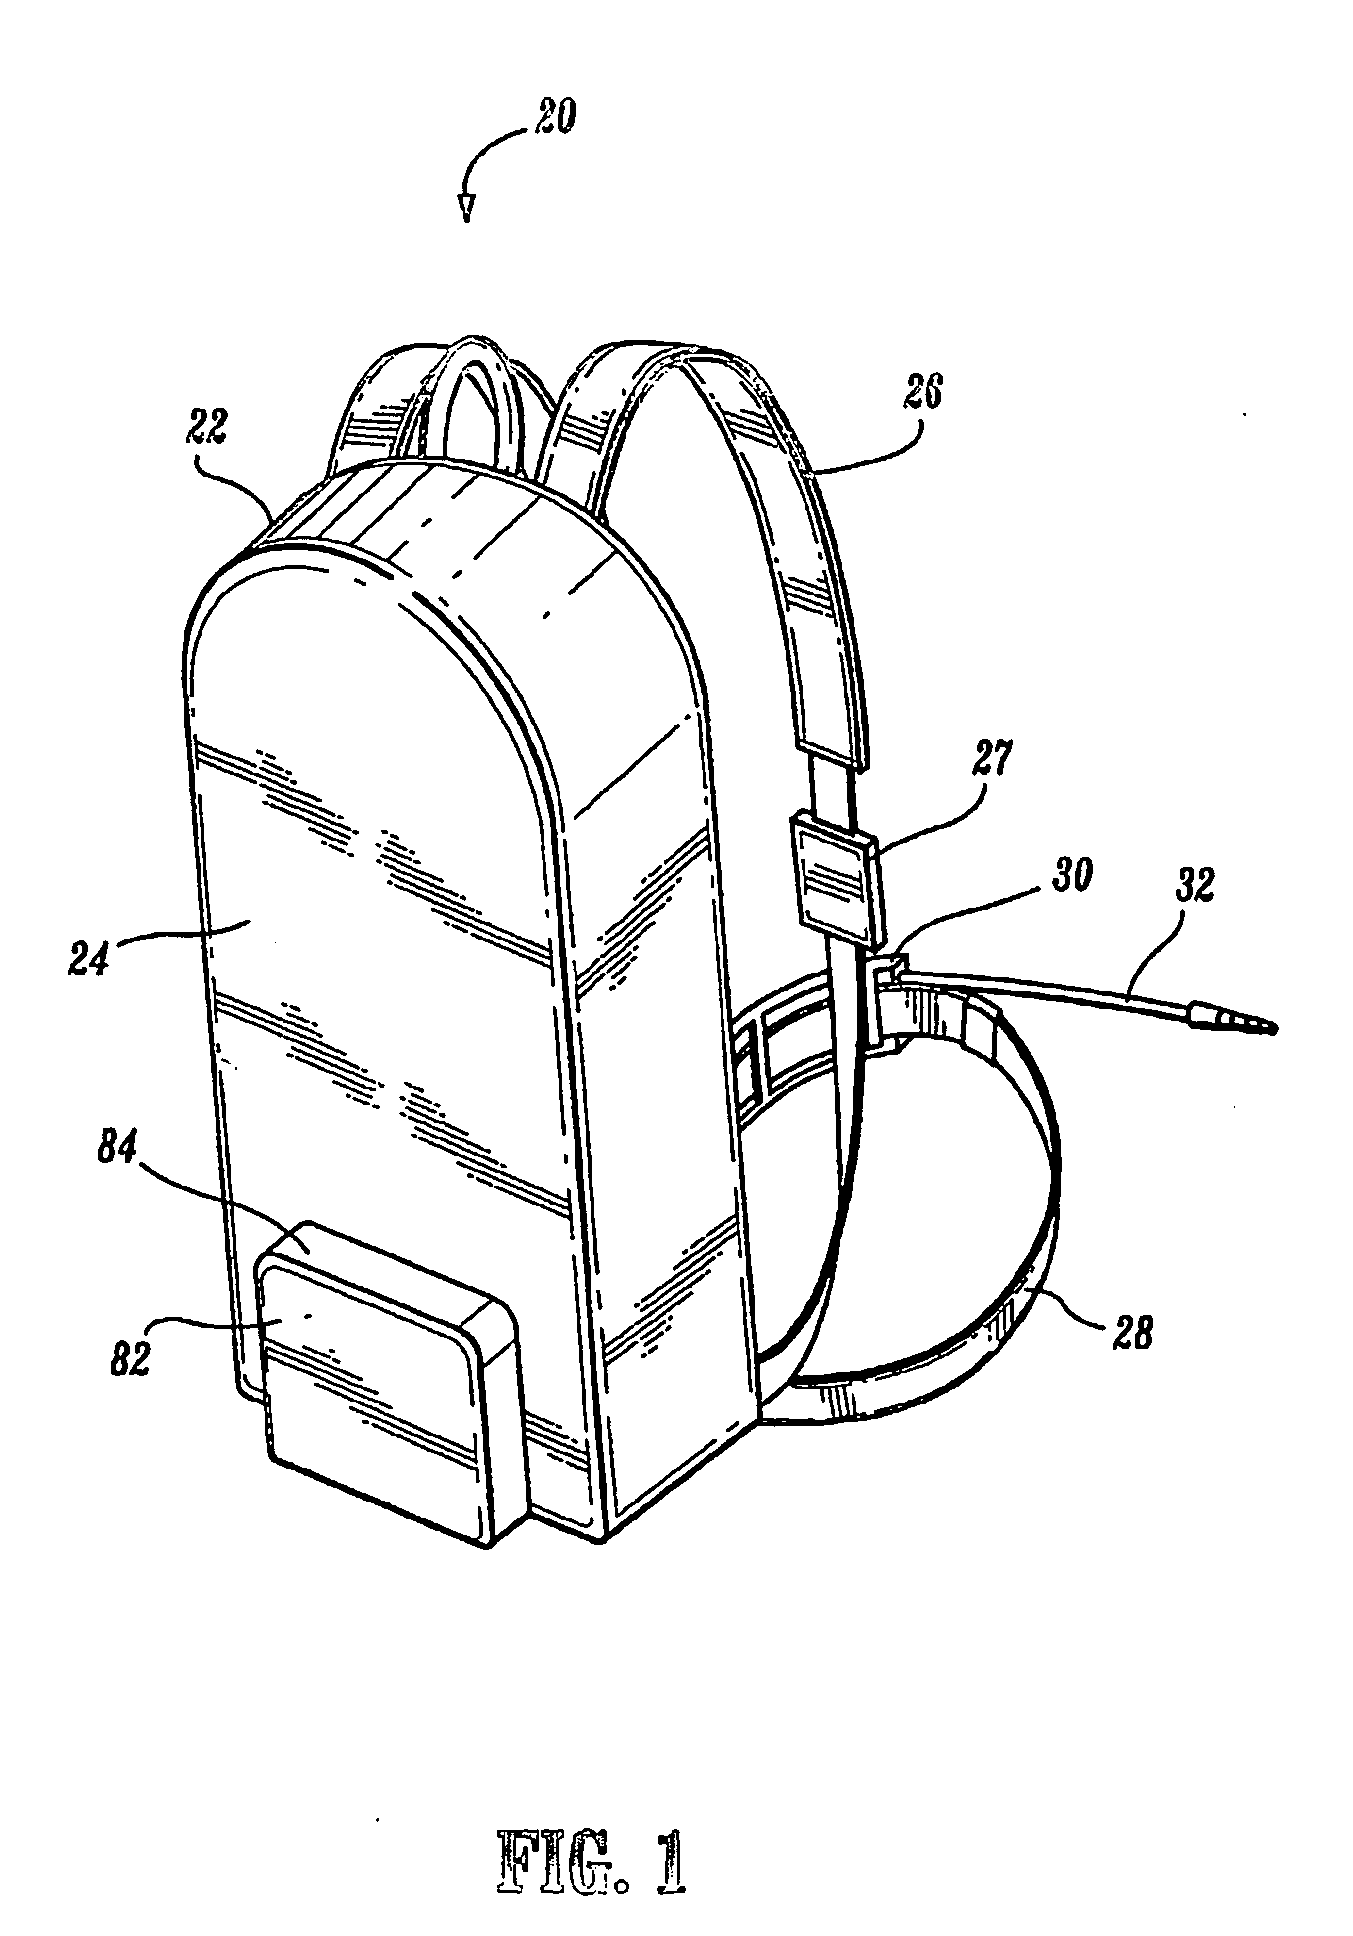 Portable enteral feeding apparatus